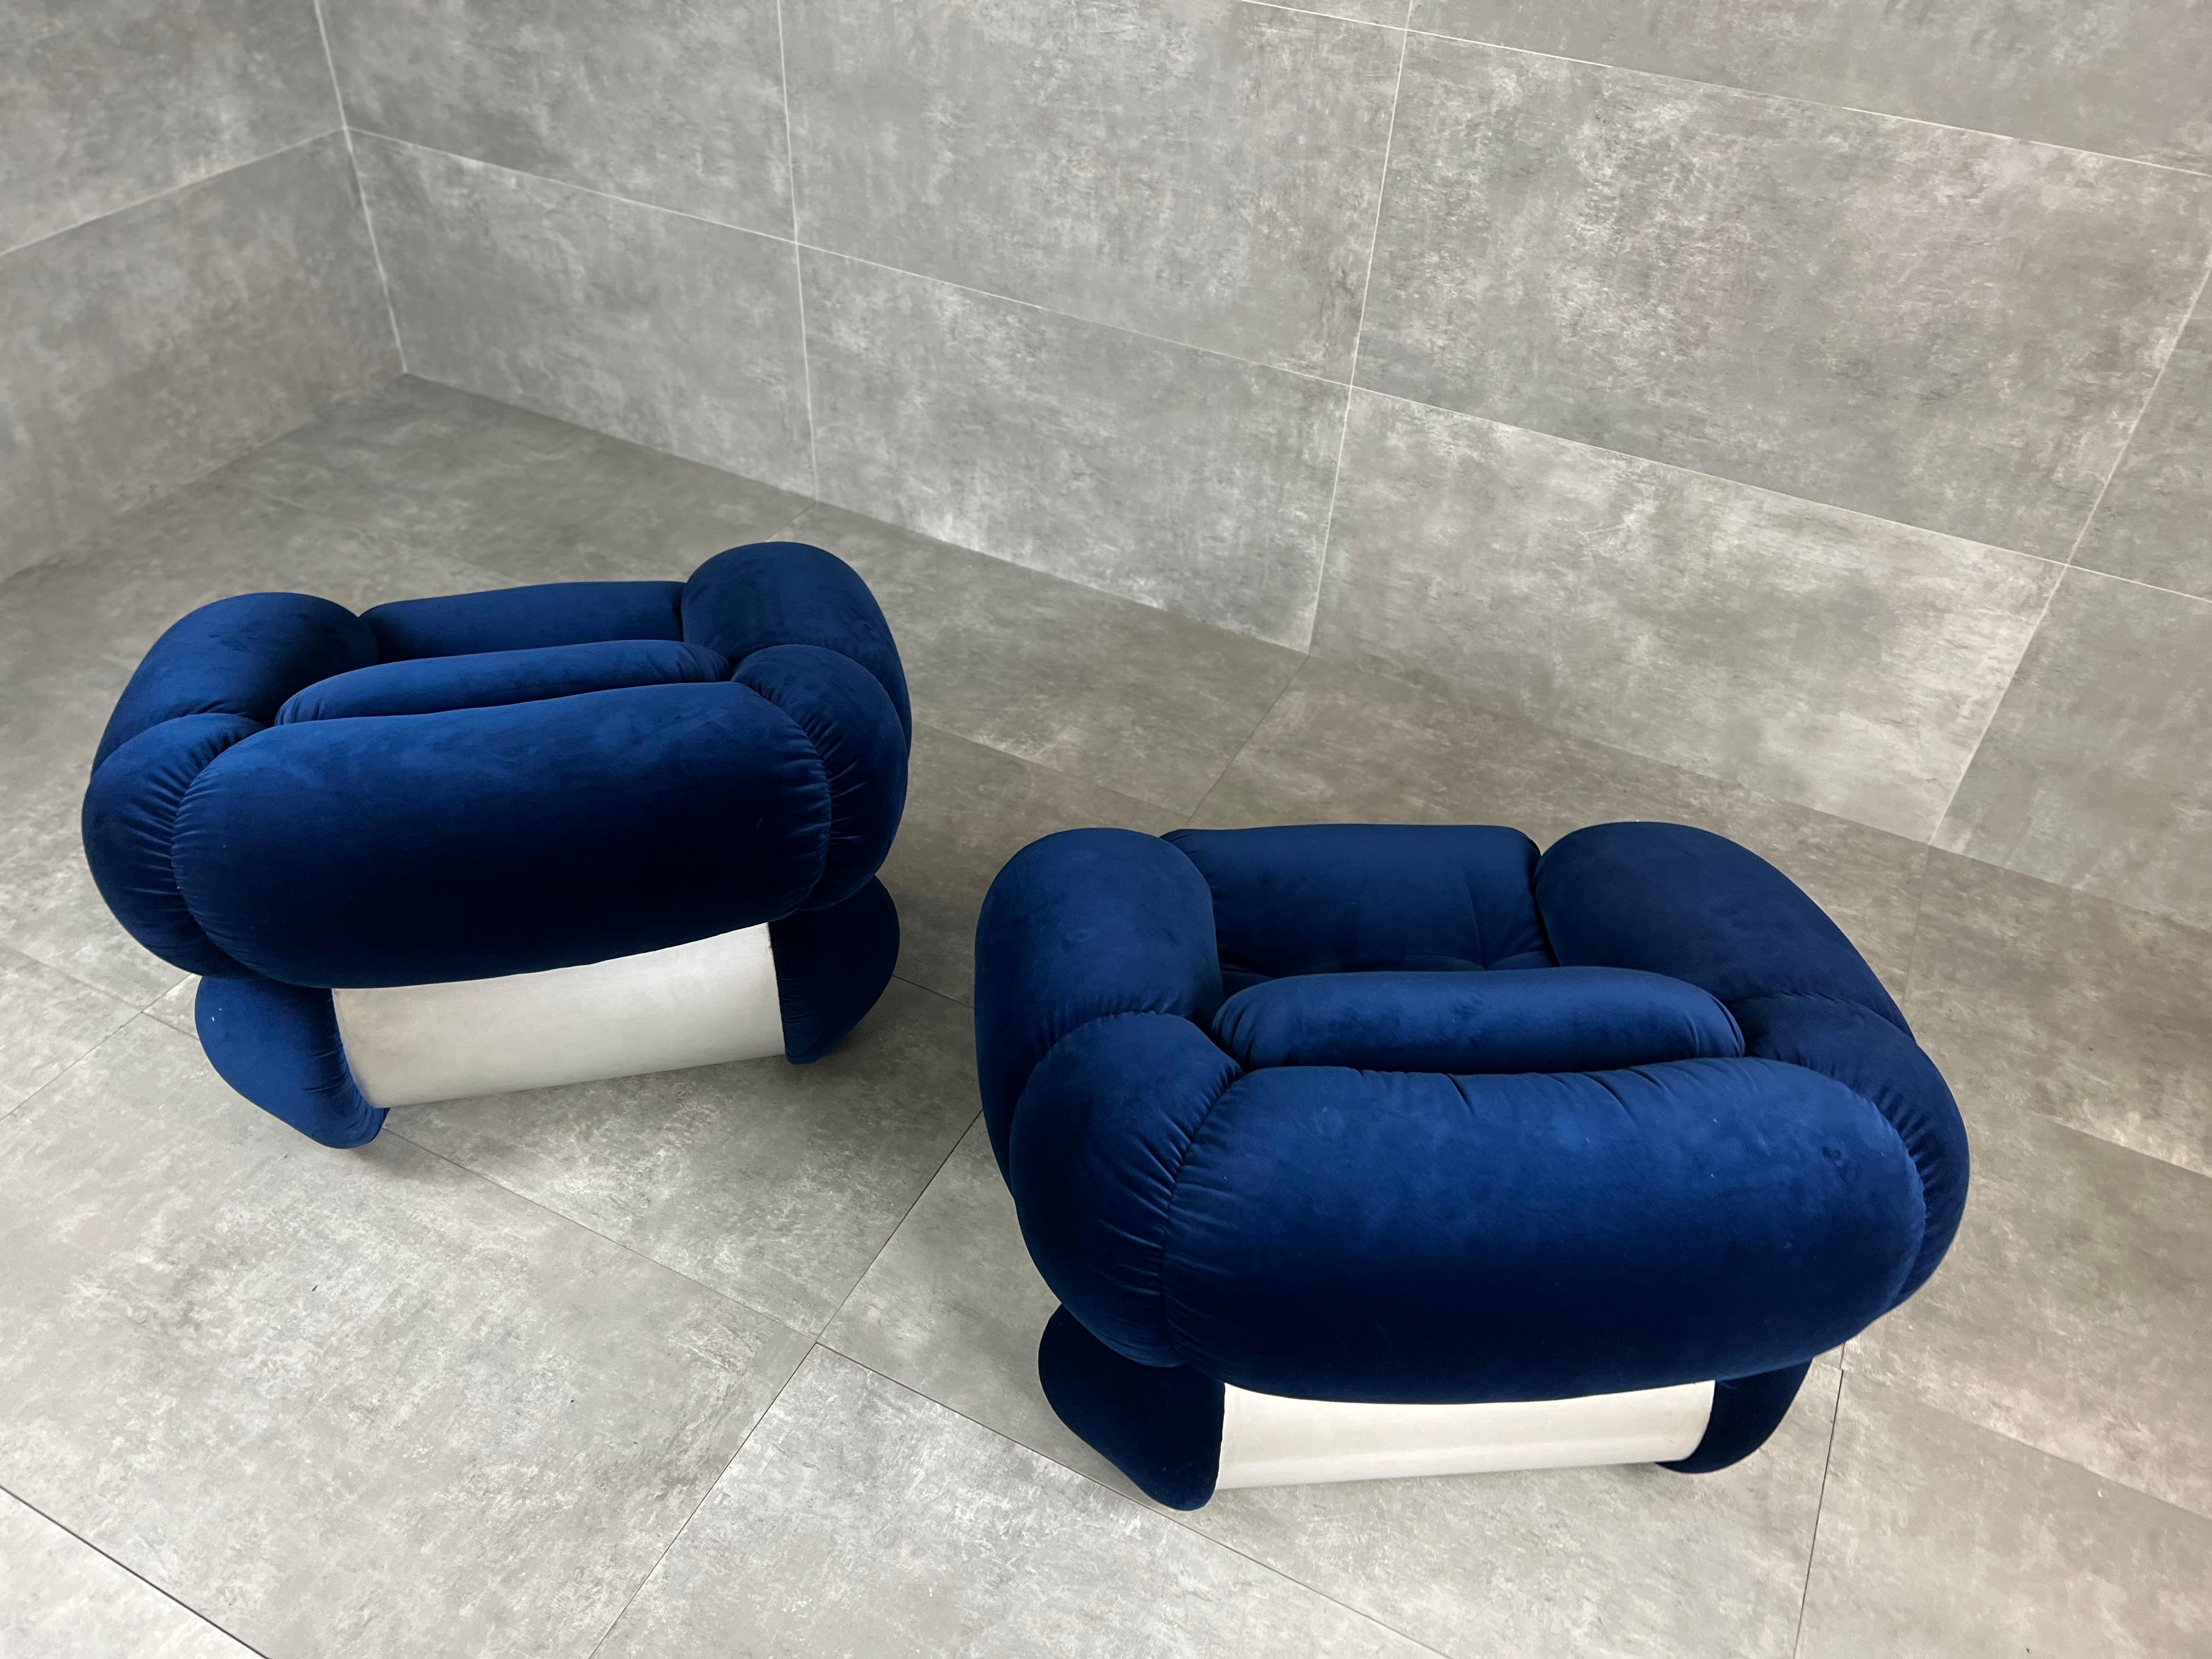 Ces fauteuils sont dotés d'une structure chromée et d'un nouveau revêtement en velours bleu.
Fauteuils conçus par Adriano Piazzesi et produits par 3D en Italie dans les années 60.
